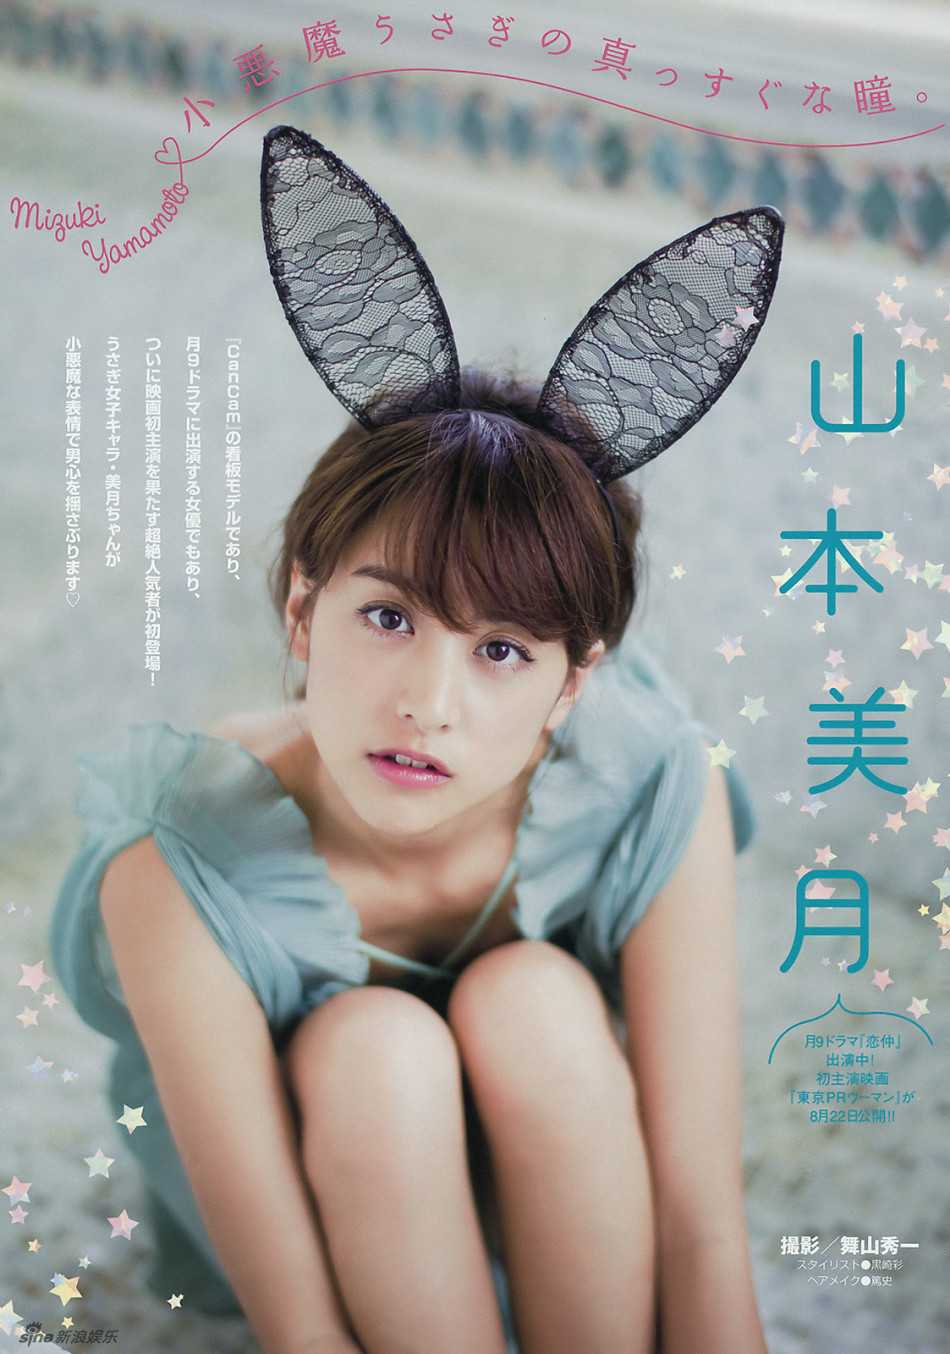 日本女星山本美月戴兔耳拍写真 灵气十足